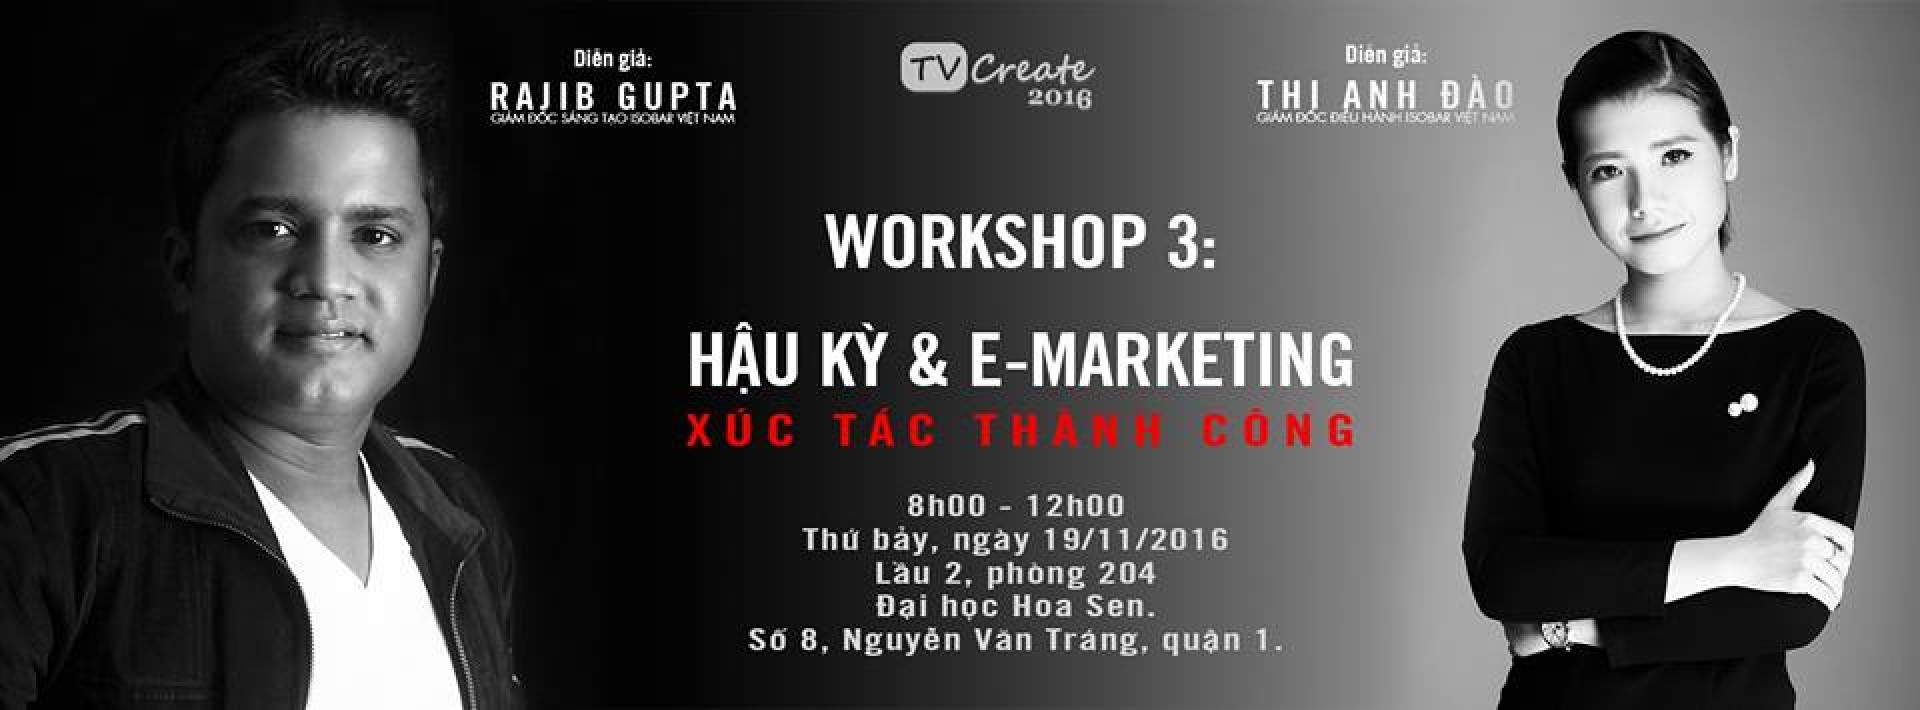 TVCREATE 2016 buổi  workshop 3 “Hậu kỳ và E-Marketing – Xúc tác thành công” 